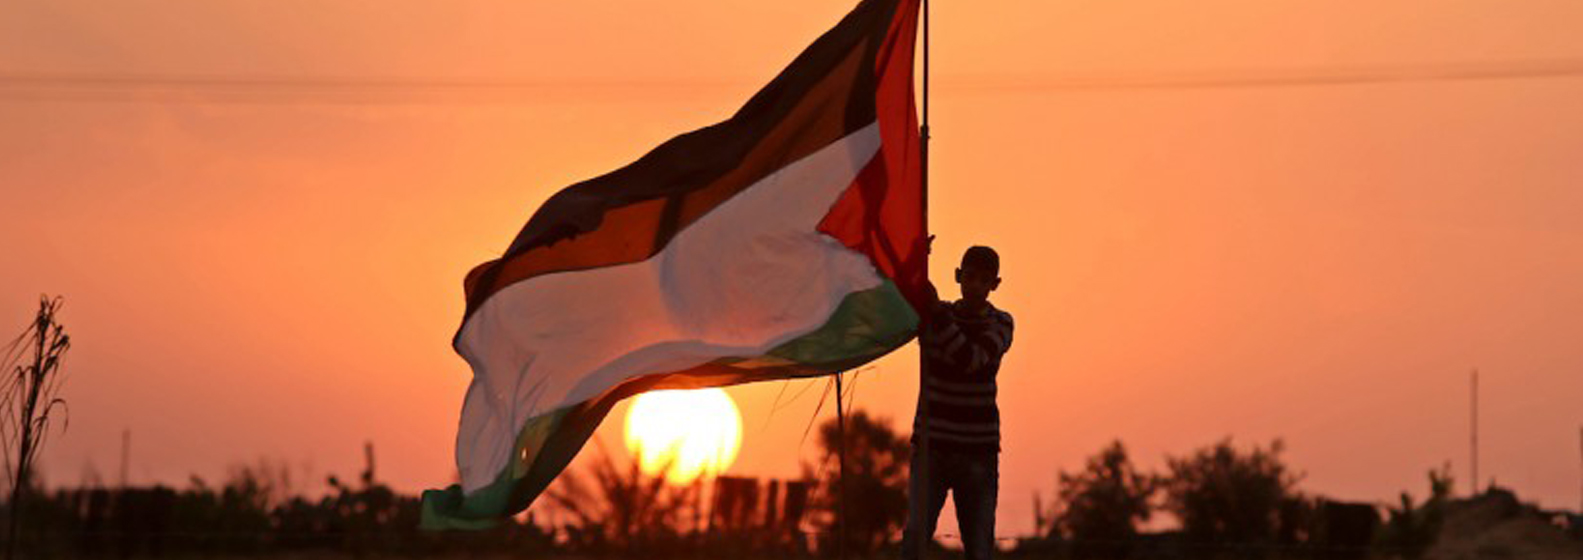 في ذكرى يوم الأرض  (شاهد) تطالب الأمم المتحدة بوضع آليات لتنفيذ القرارات المتعلقة بالقضية الفلسطينية